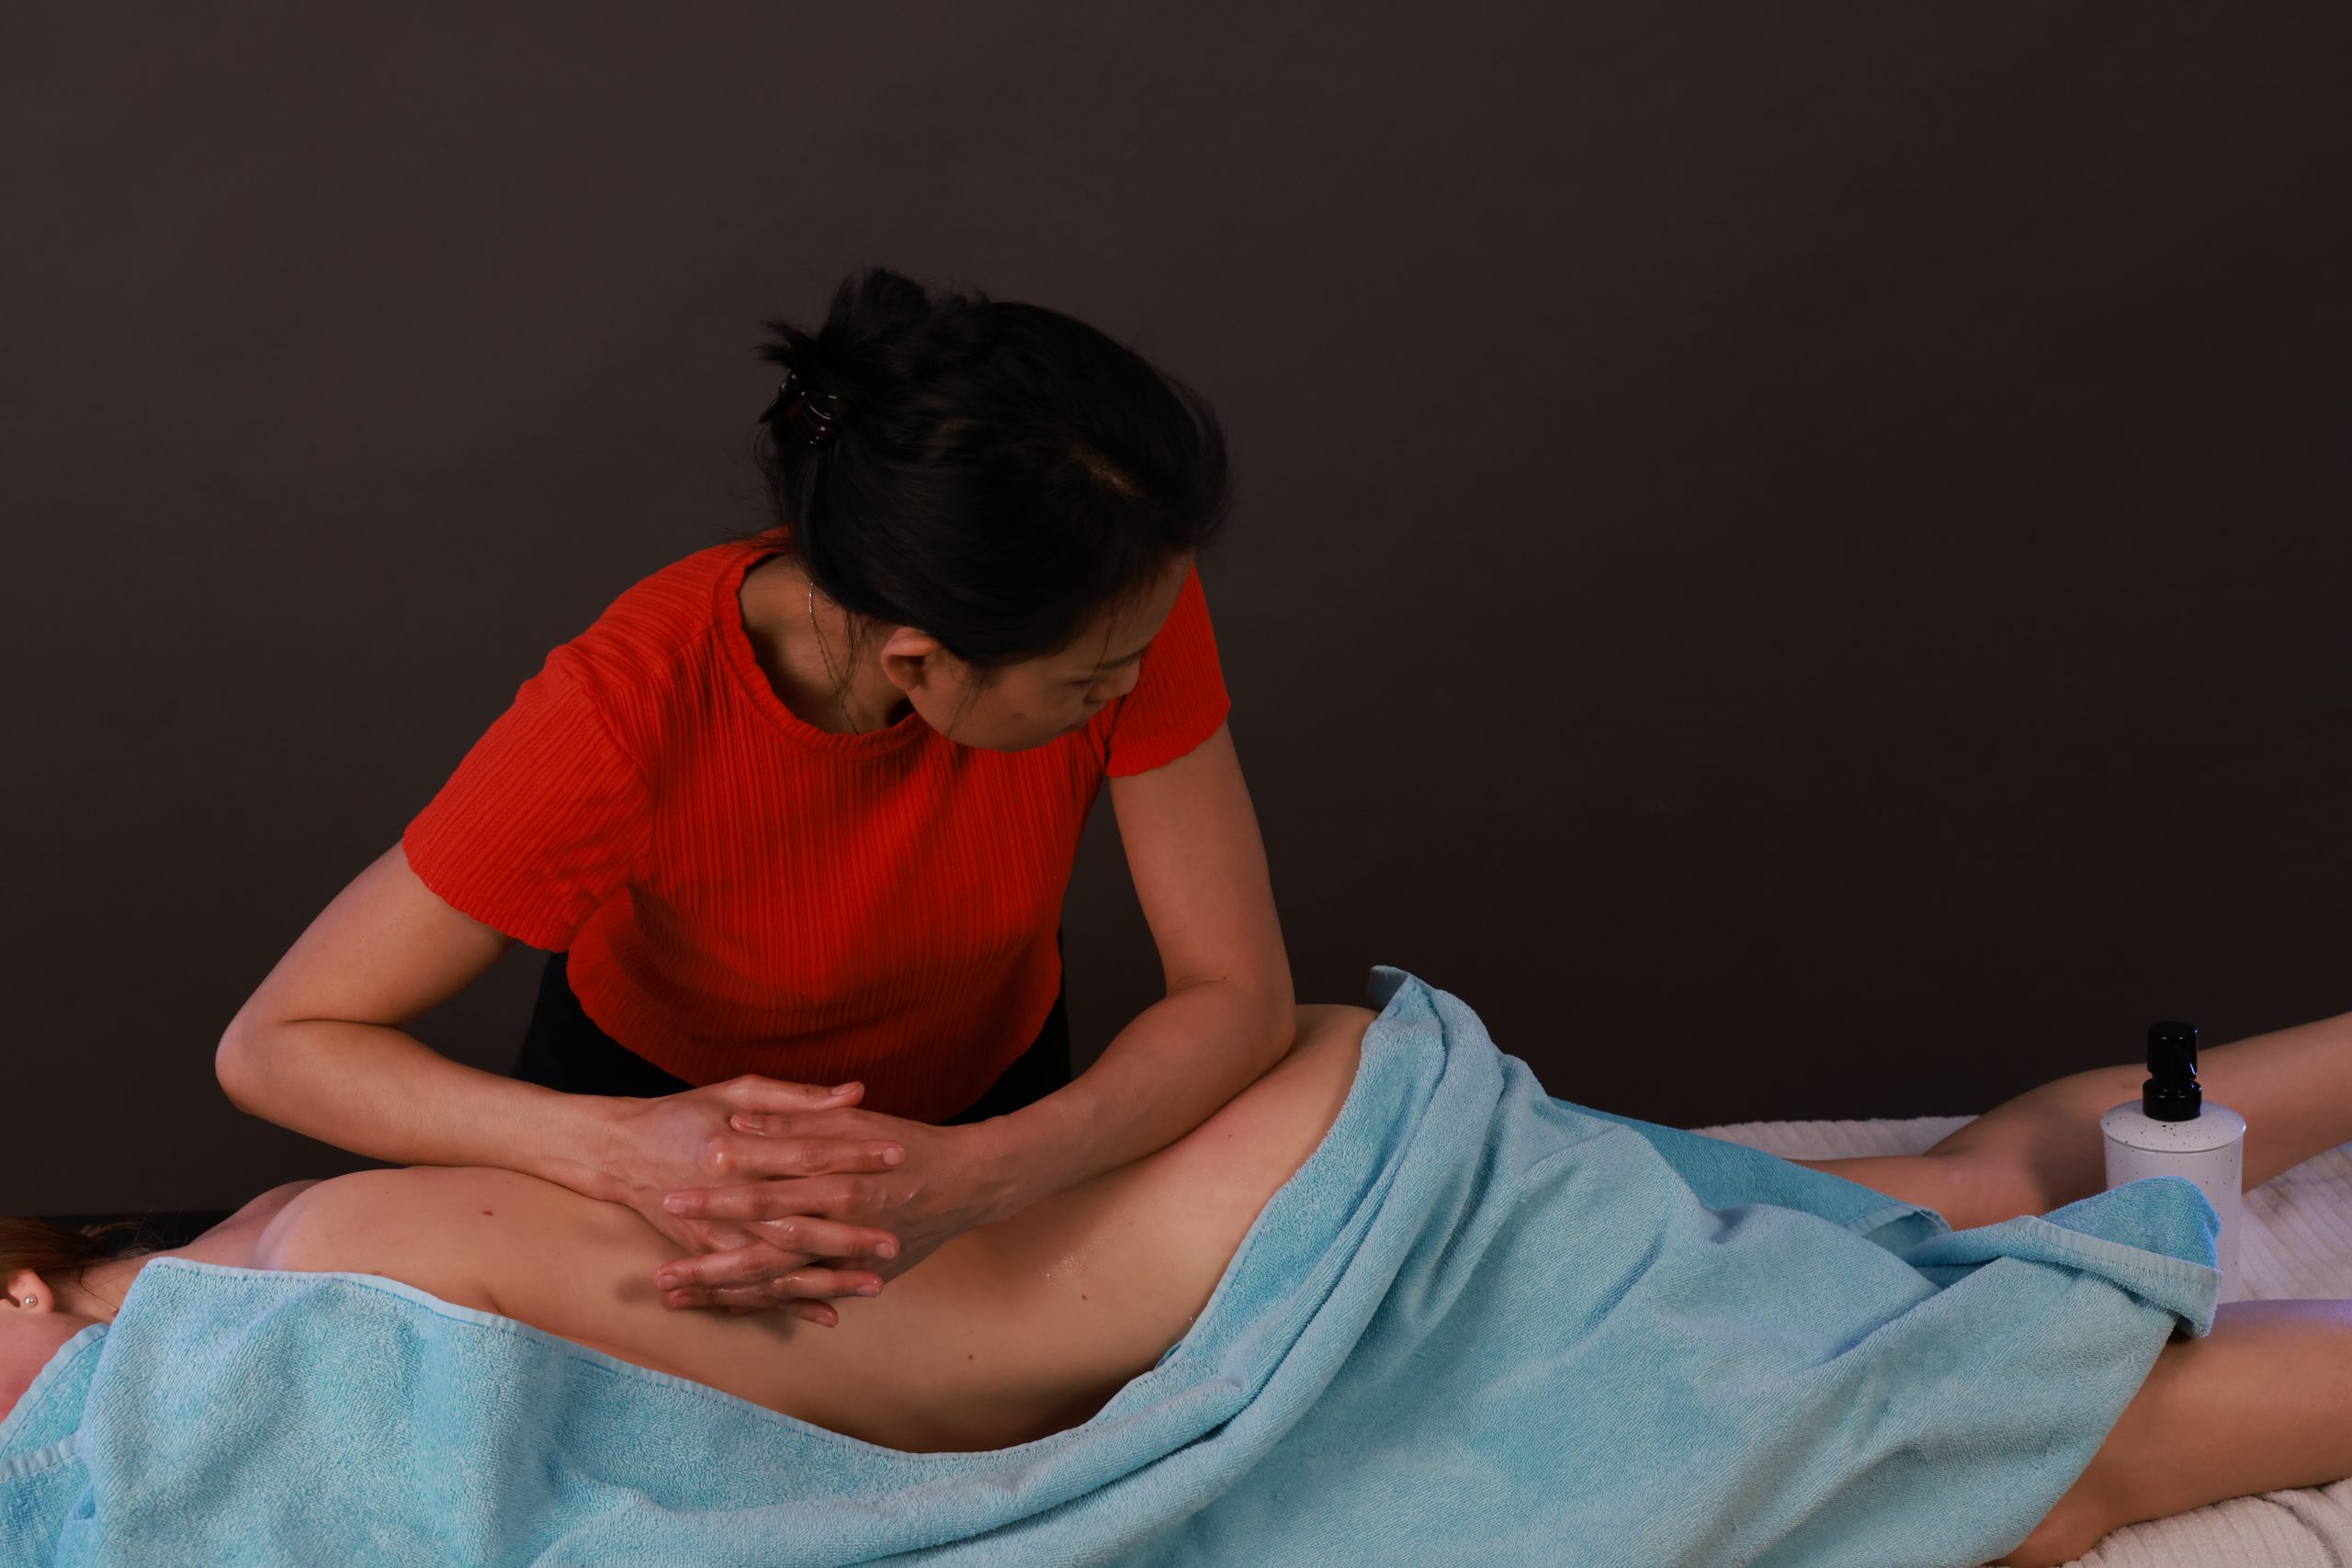 Alla kroppsdelar masseras och stretchas när Nok gör sin massage hemma hos privatpersoner i Nacka.